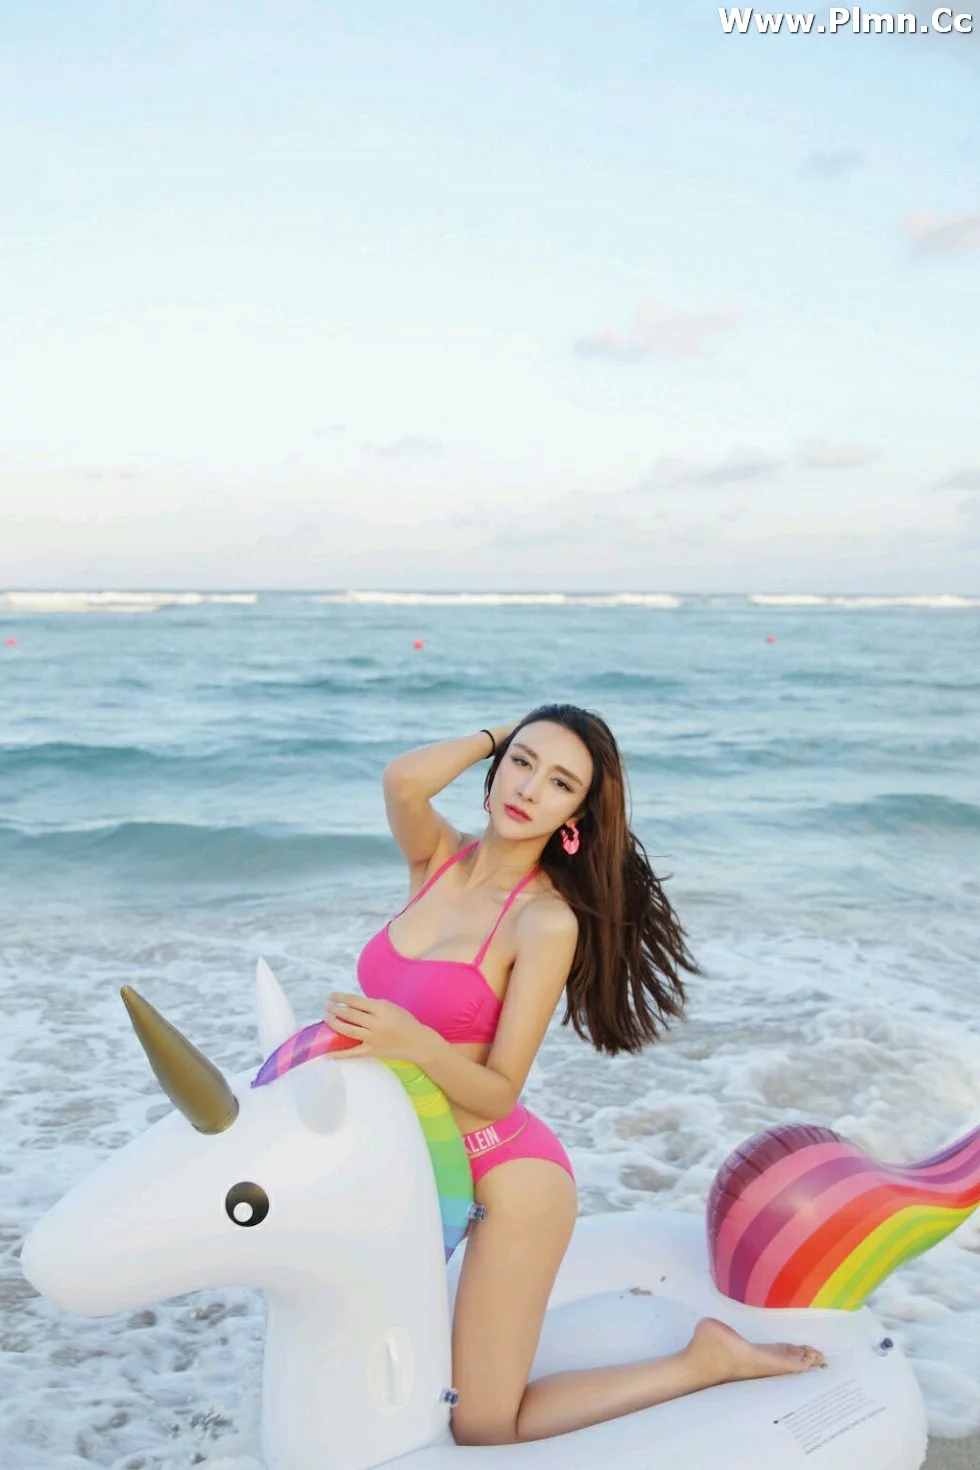 [Candy糖果画报]Vol.041_嫩模伊莉娜巴厘岛旅拍沙滩边红色性感比基尼秀完美身材写真43P